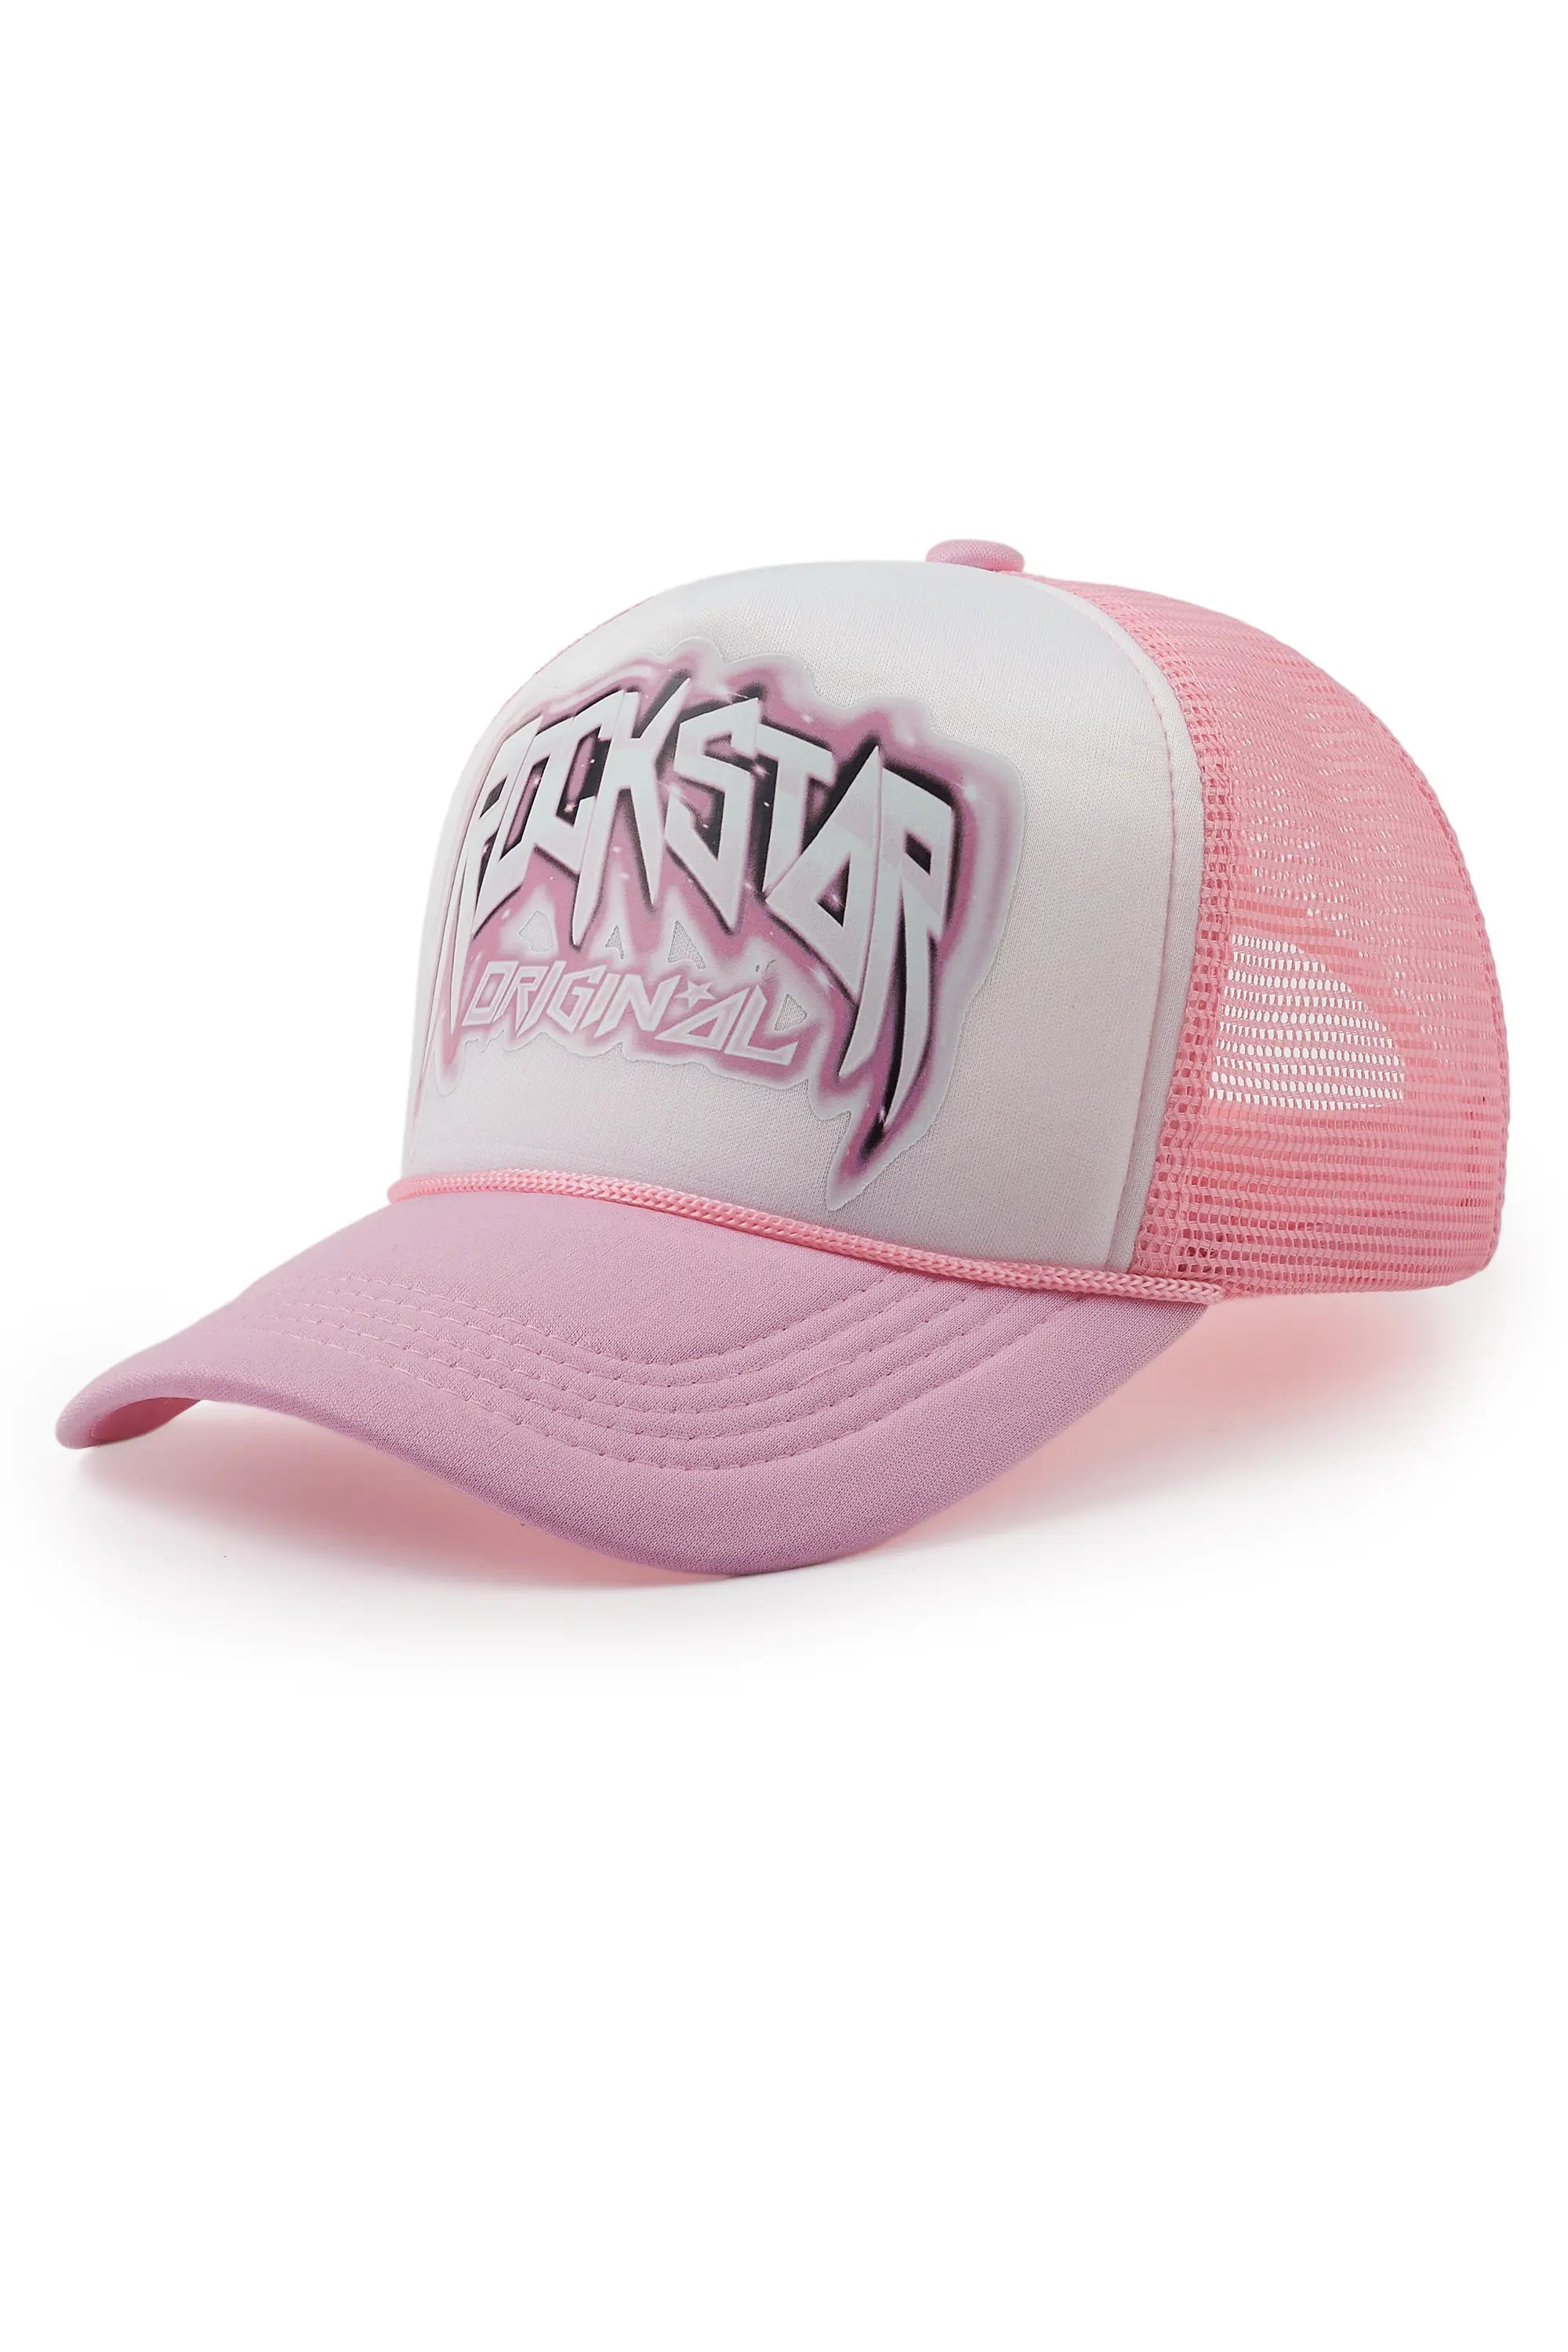 Gangsta White/Light Pink Trucker Hat